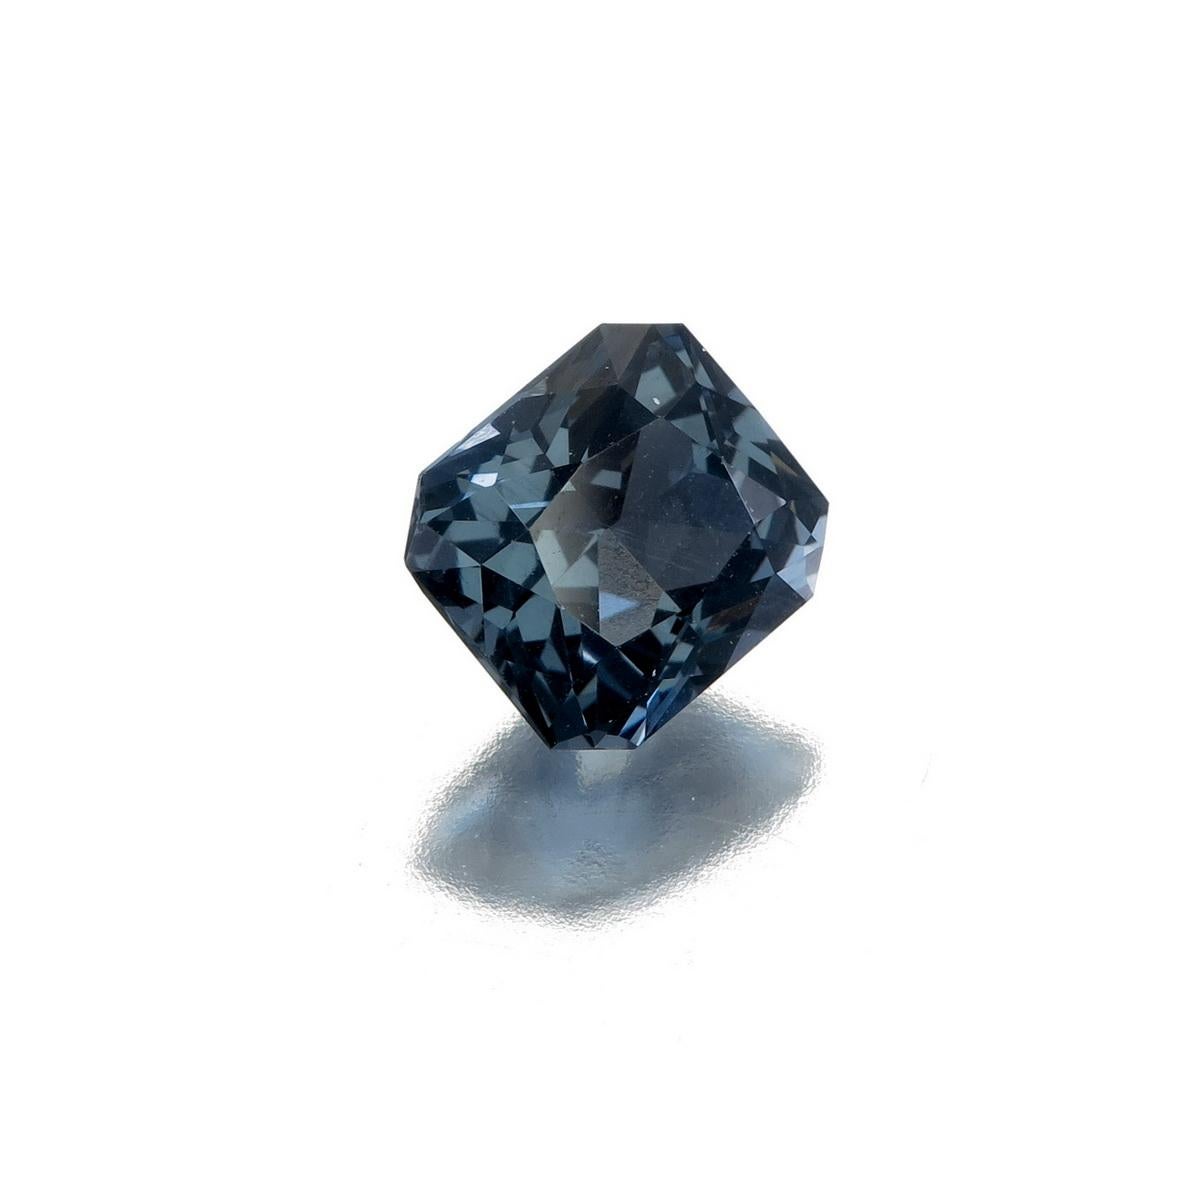 GIL Certified 2.12 carat Cobalt Blue Spinel from Burma
No Heat
Dimension: 7.00 x 7.56 x 4.79 mm
Weight: 2.12 carat
Cut: Octagonal